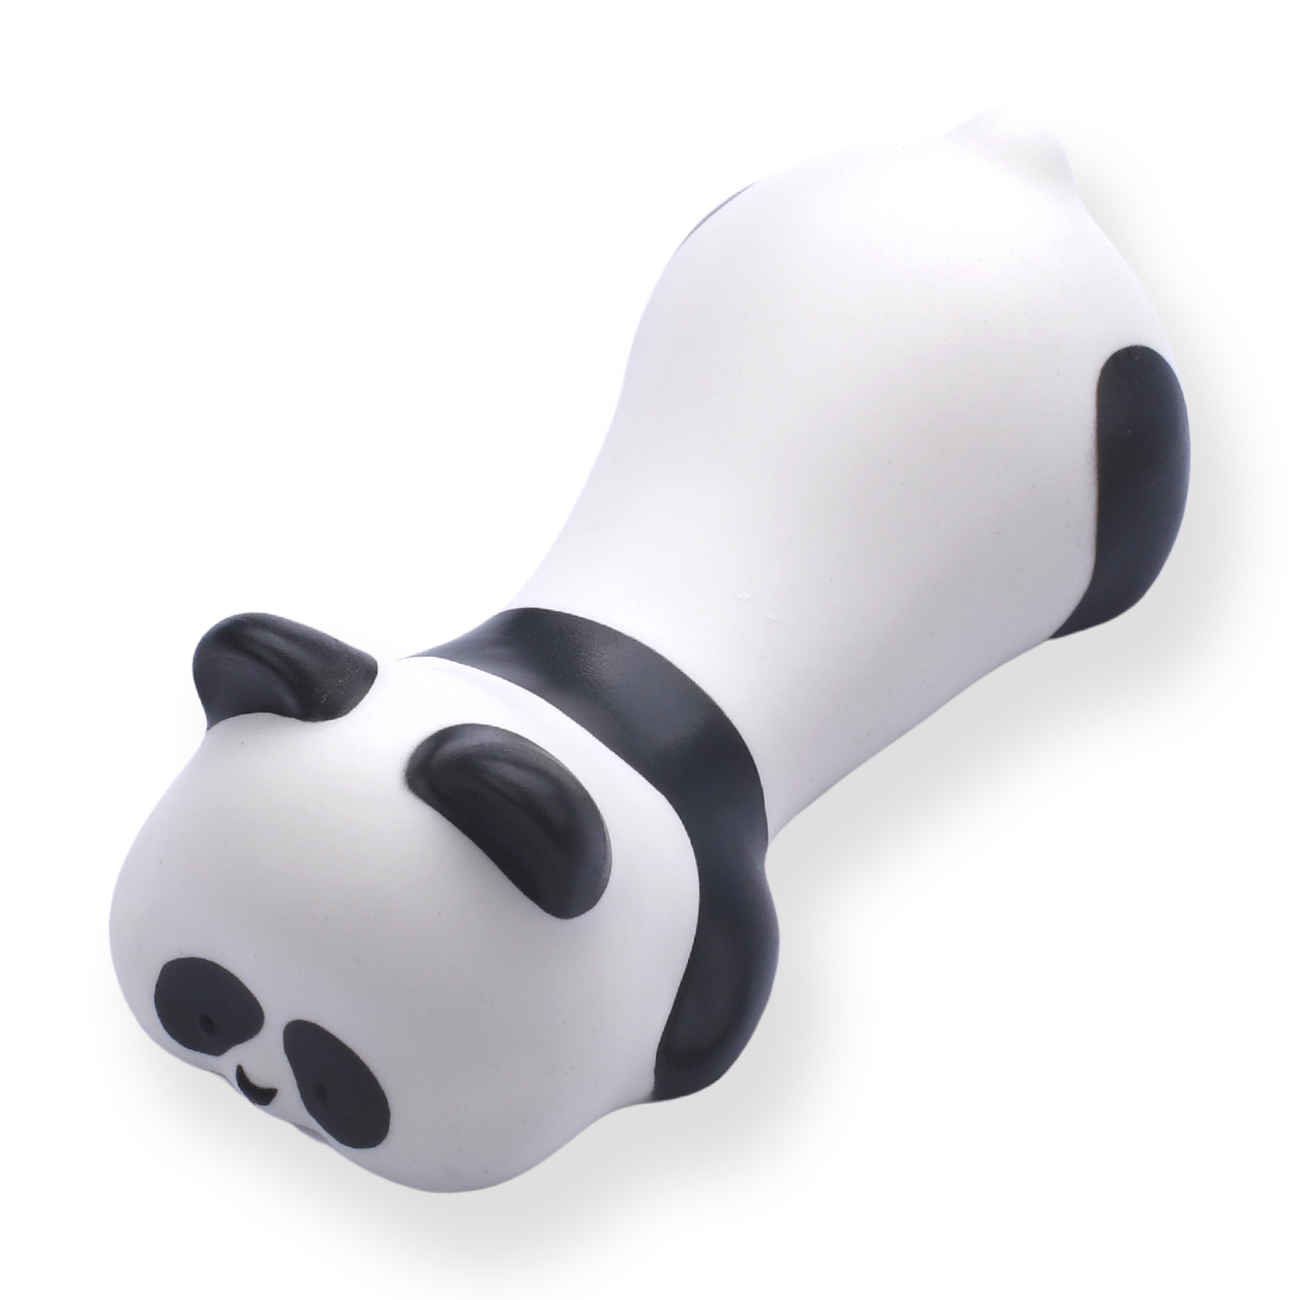 Cute Animal Wrist Rest - Bamboo Panda - Stationery Pal